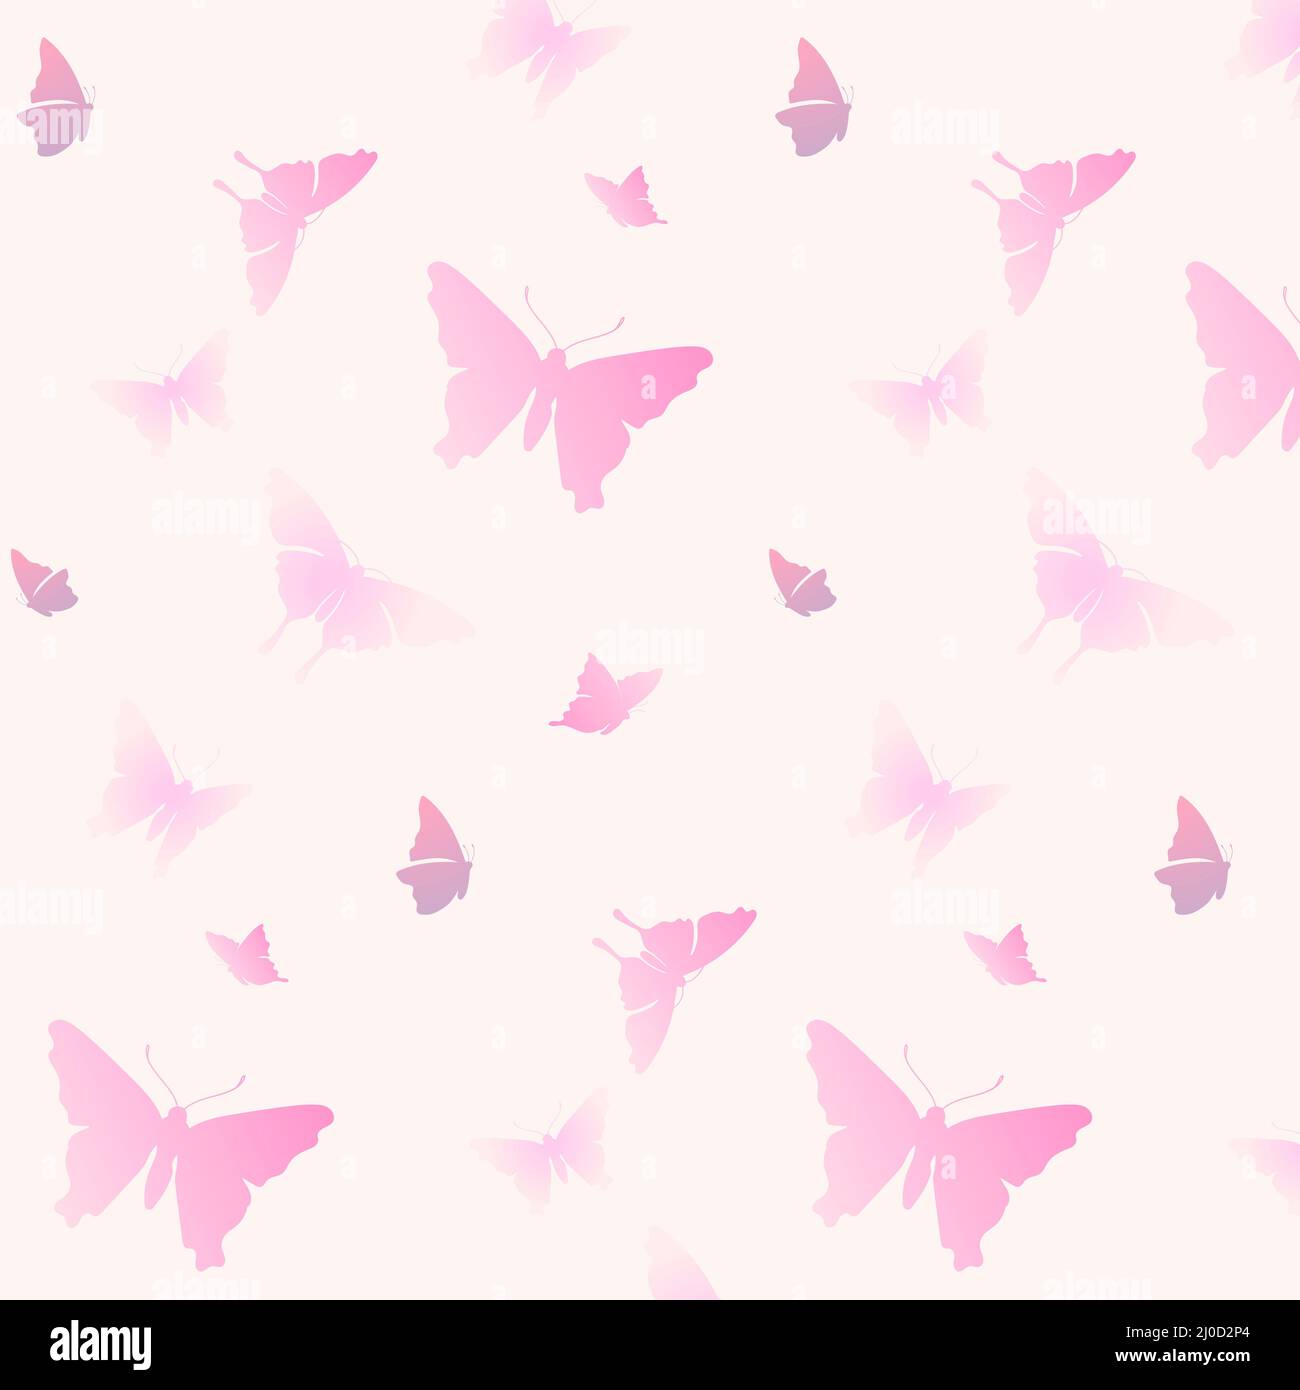 Mẫu Họa Tiết Bướm Thẩm Mỹ, Tông Màu Pastel (Aesthetic Butterfly Pattern, Pastel Color Theme): Những người yêu thích sự thanh lịch và tinh tế sẽ yêu thích mẫu họa tiết bướm này! Với tông màu pastel nhẹ nhàng và các họa tiết bướm độc đáo, chúng mang đến một phong cách thời trang và tuyệt vời.